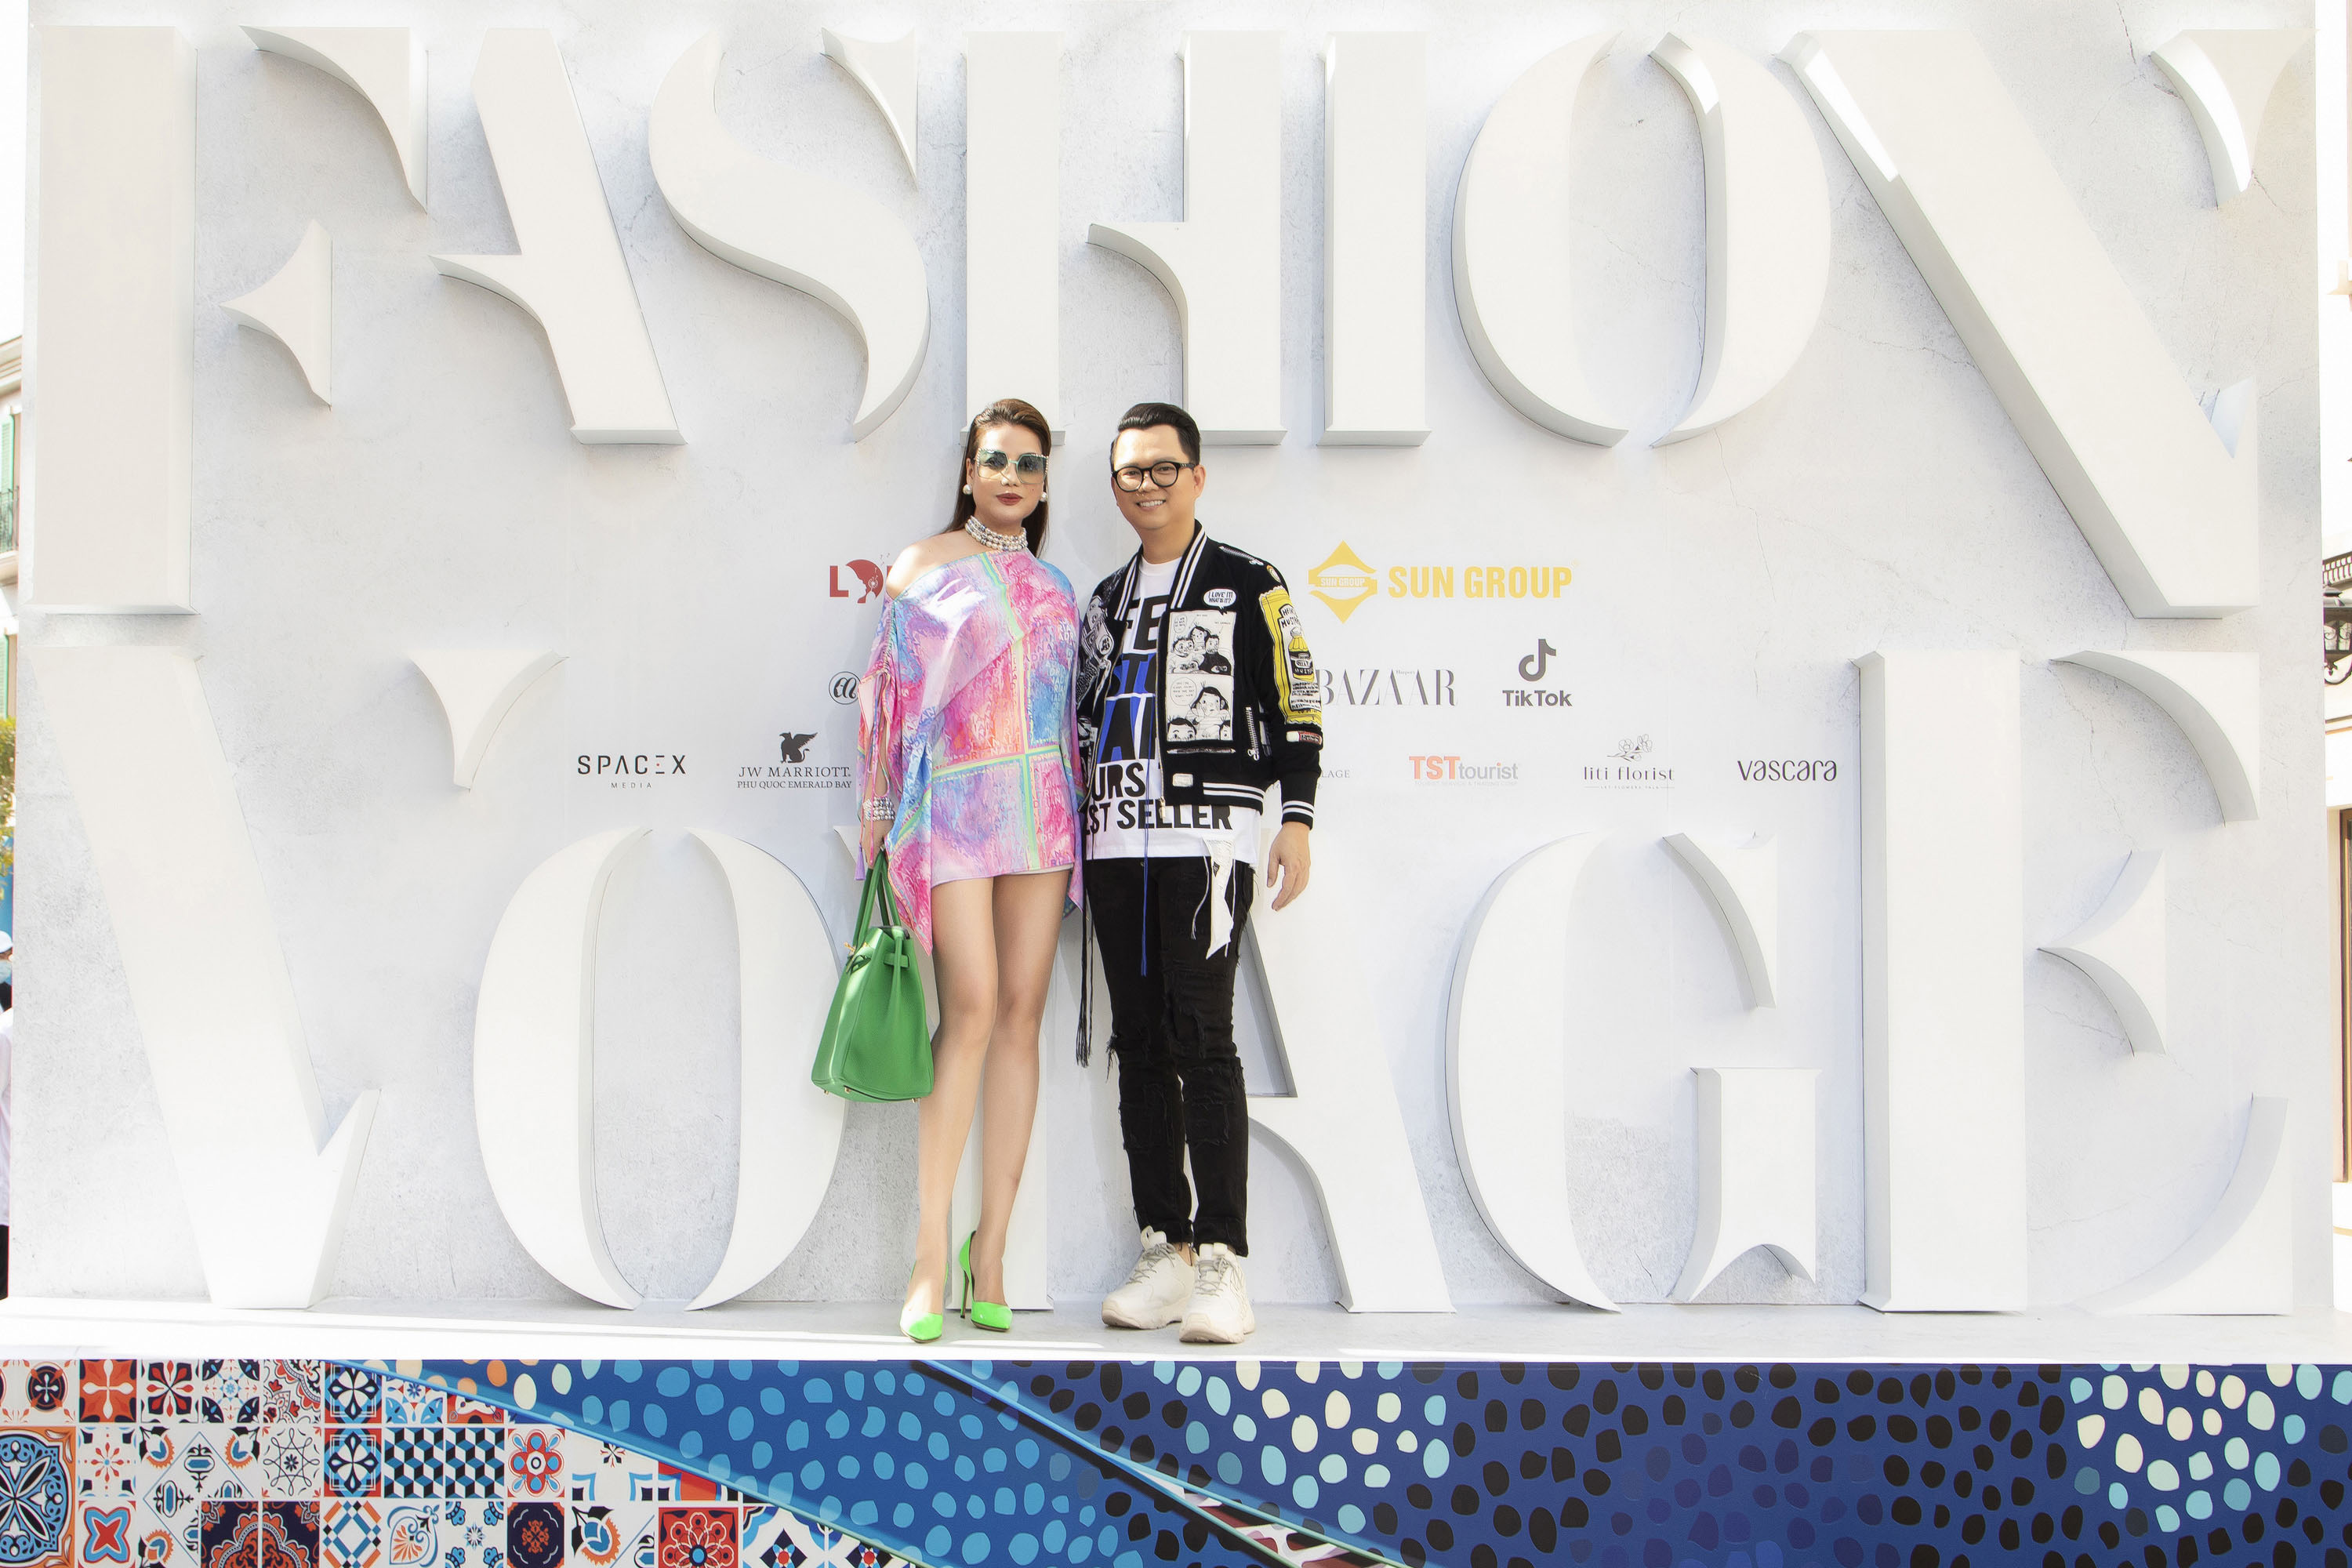 Dàn sao hội tụ tại show thời trang Fashion Voyage #3, Vũ Khắc Tiệp bịt khẩu trang kĩ lưỡng vẫn bị Paris gọi tên